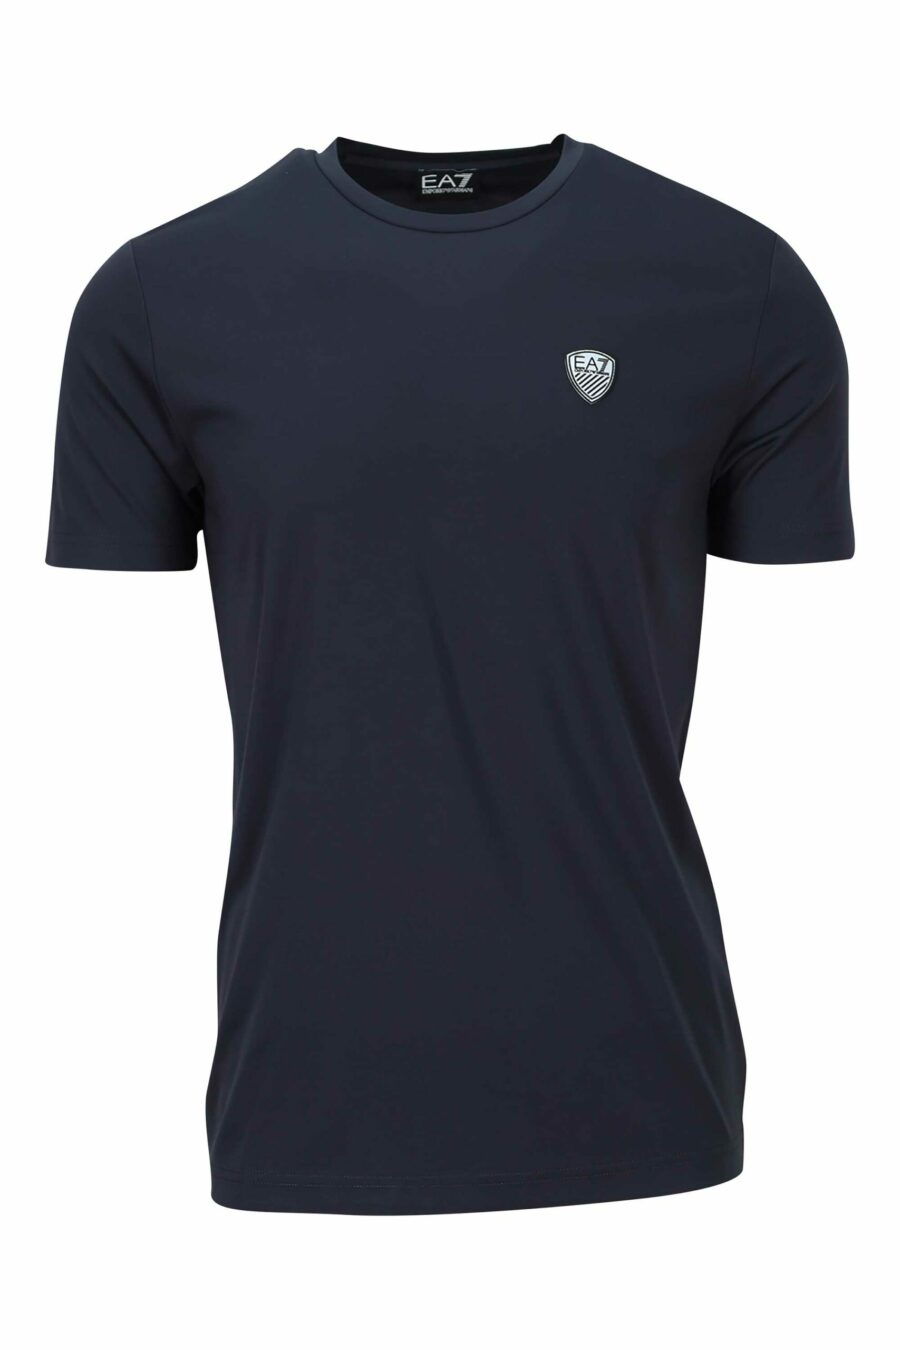 Camiseta azul marino con minilogo escudo "lux identity" - 8057767519964 scaled